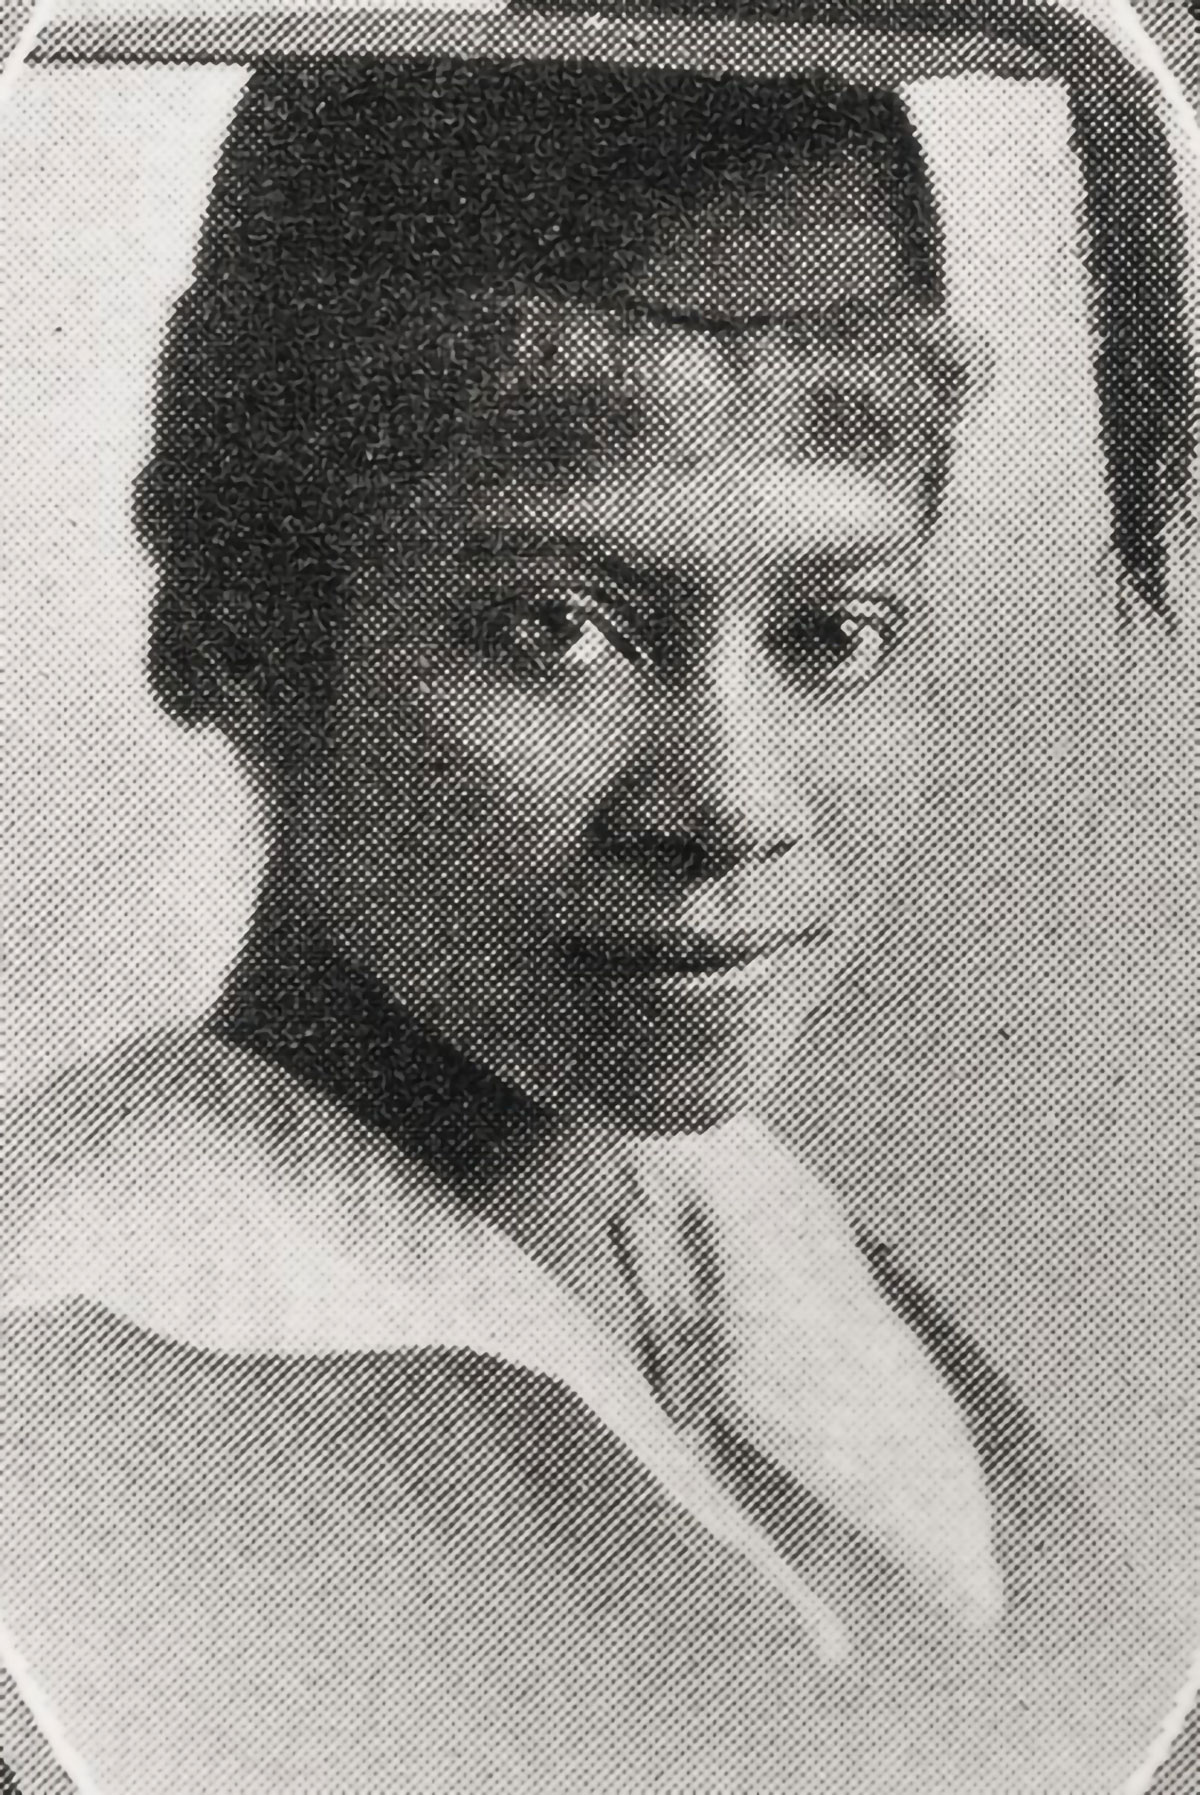 Vintage portrait photograph of Dr. Eva B. Dykes